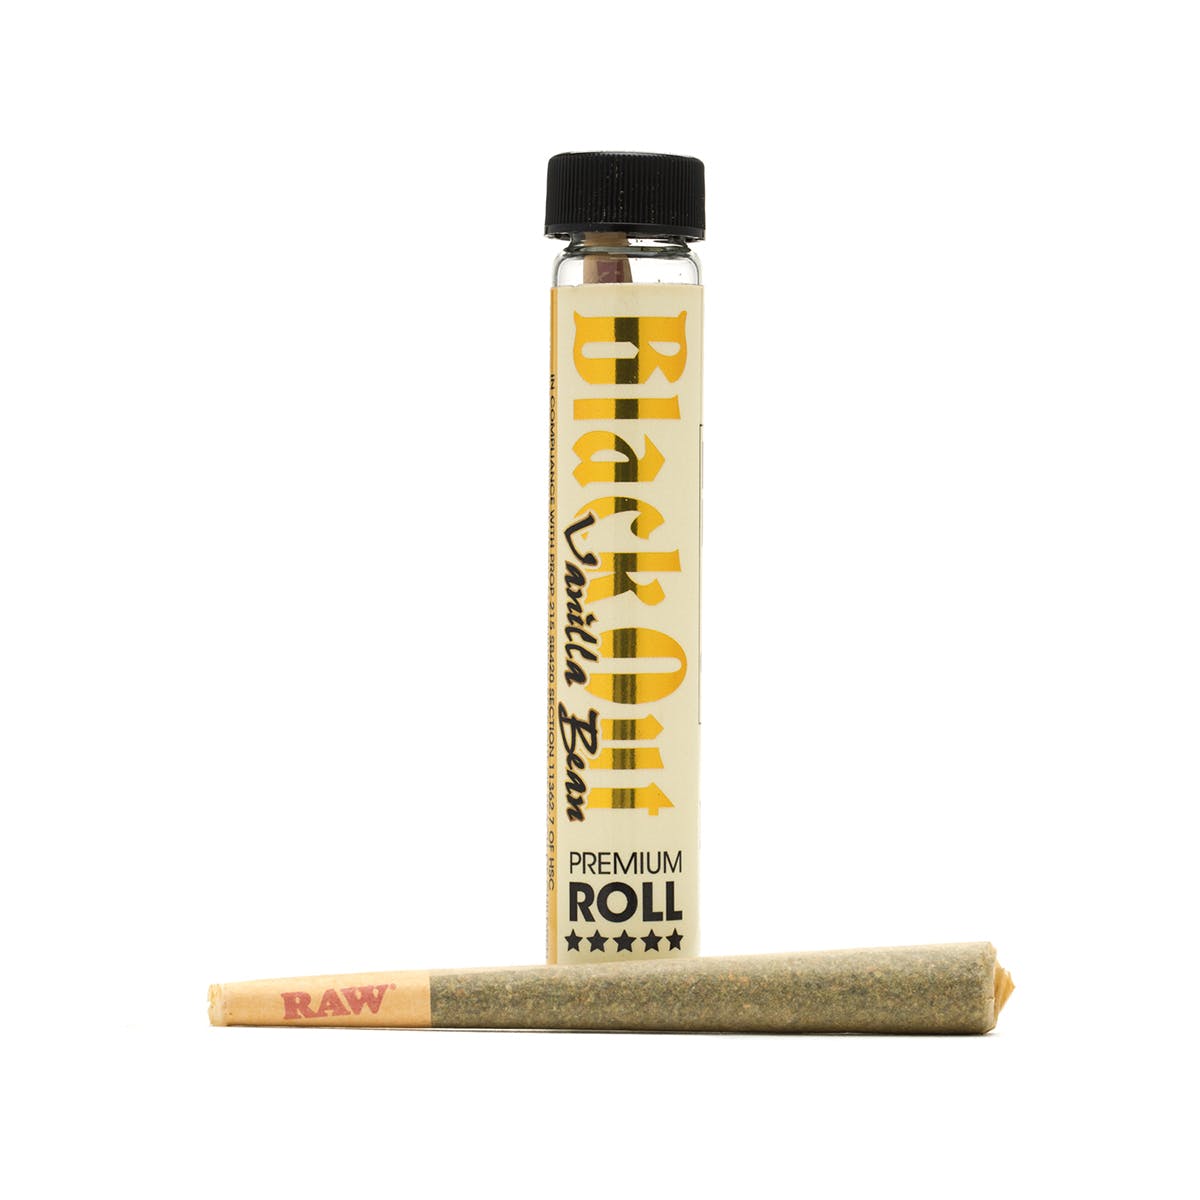 marijuana-dispensaries-highway-collective-in-el-cajon-vanilla-bean-blackout-premium-roll